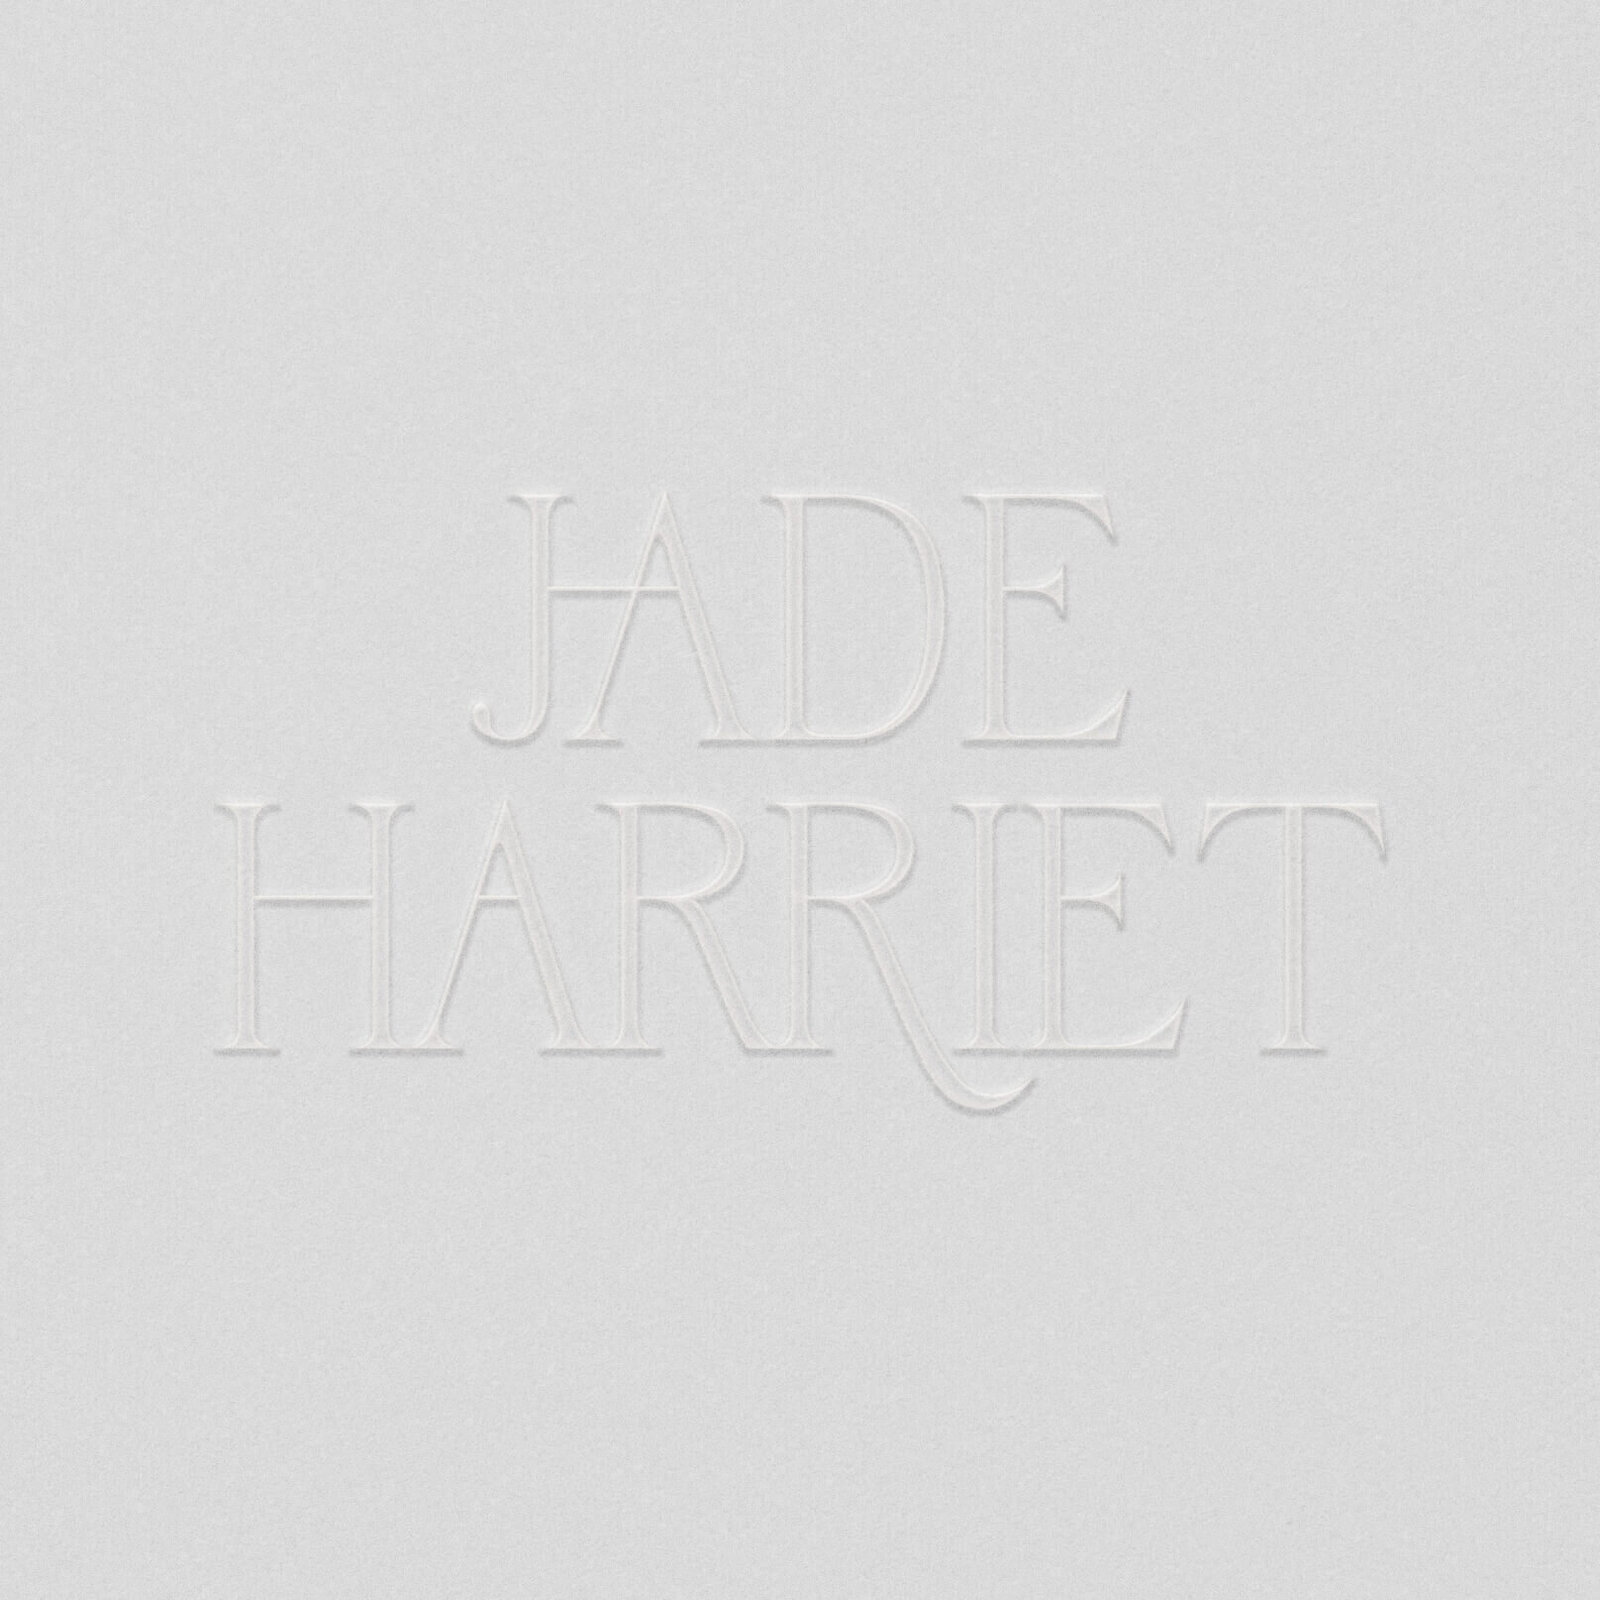 Jade Harriet Brand IG POST-5